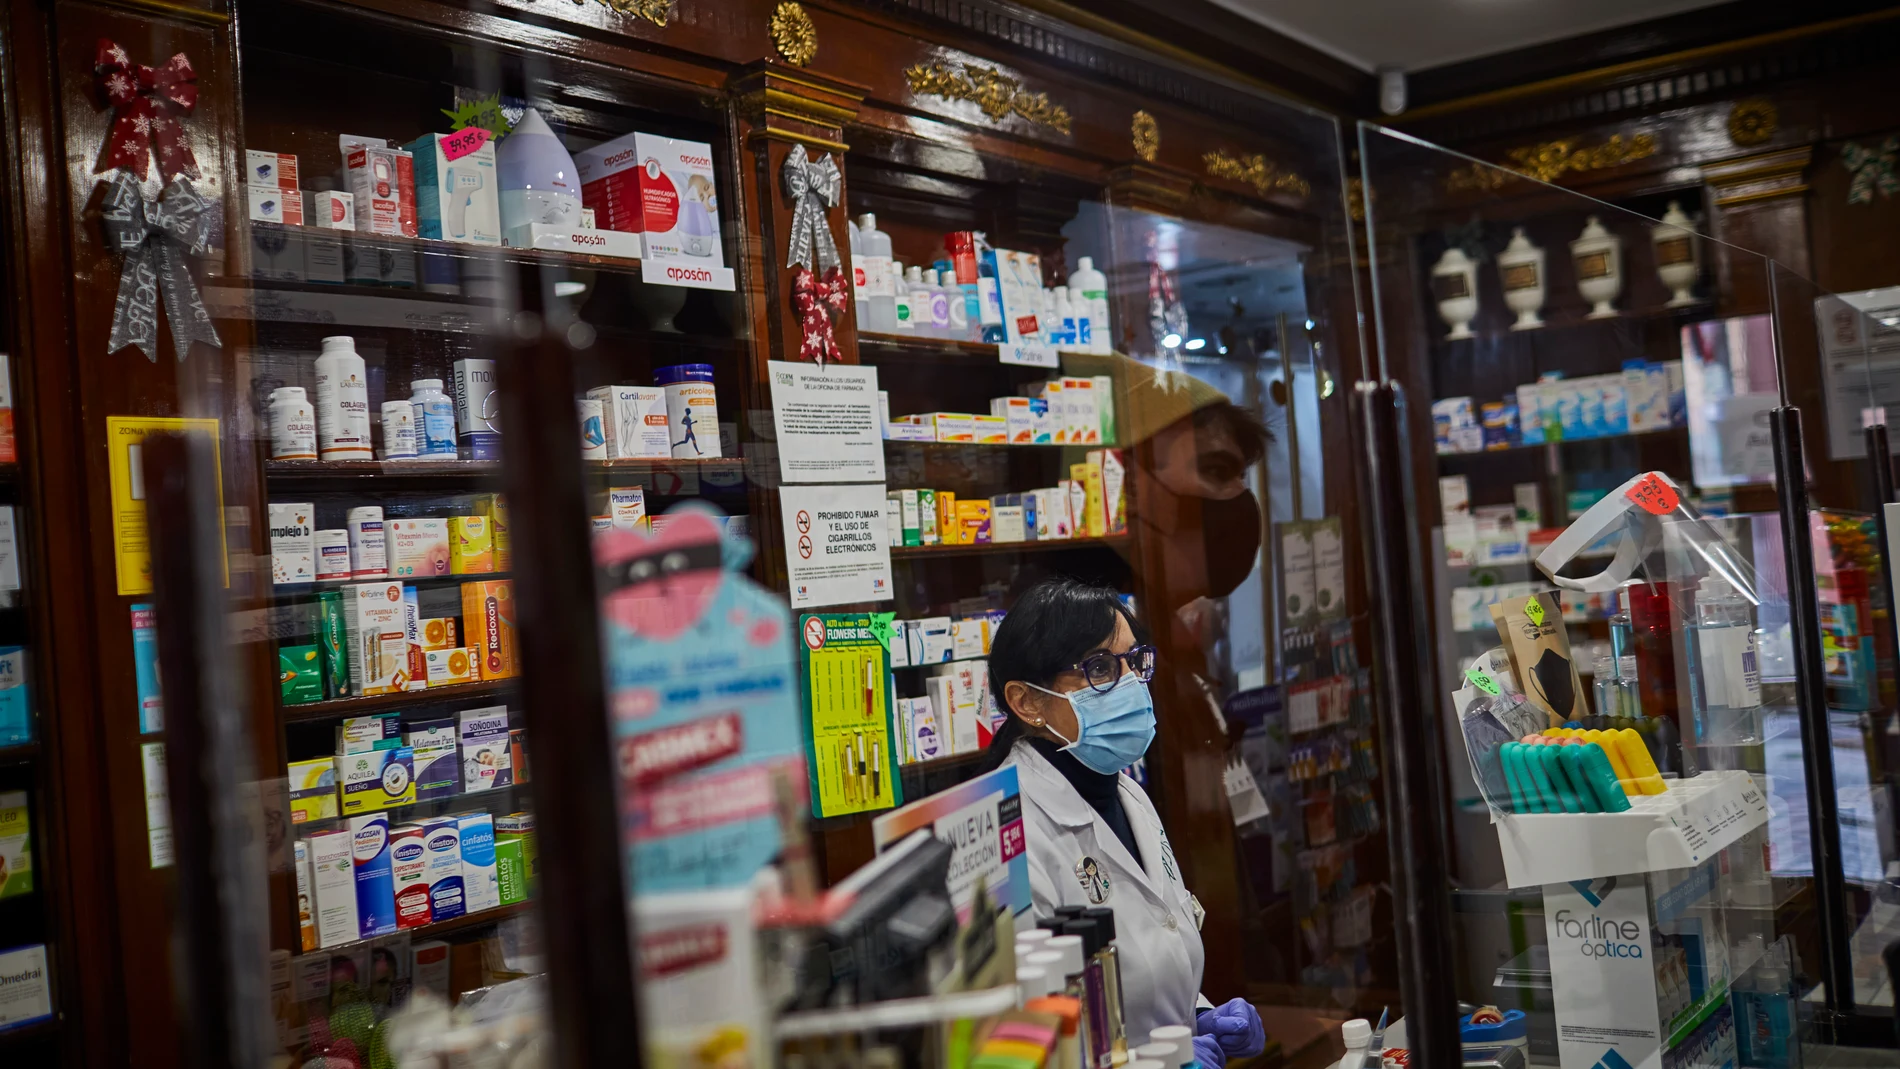 La red de farmacias comunitarias ha sido la encargada de prestar parte de la atención sanitaria, cubriendo un importante servicio público